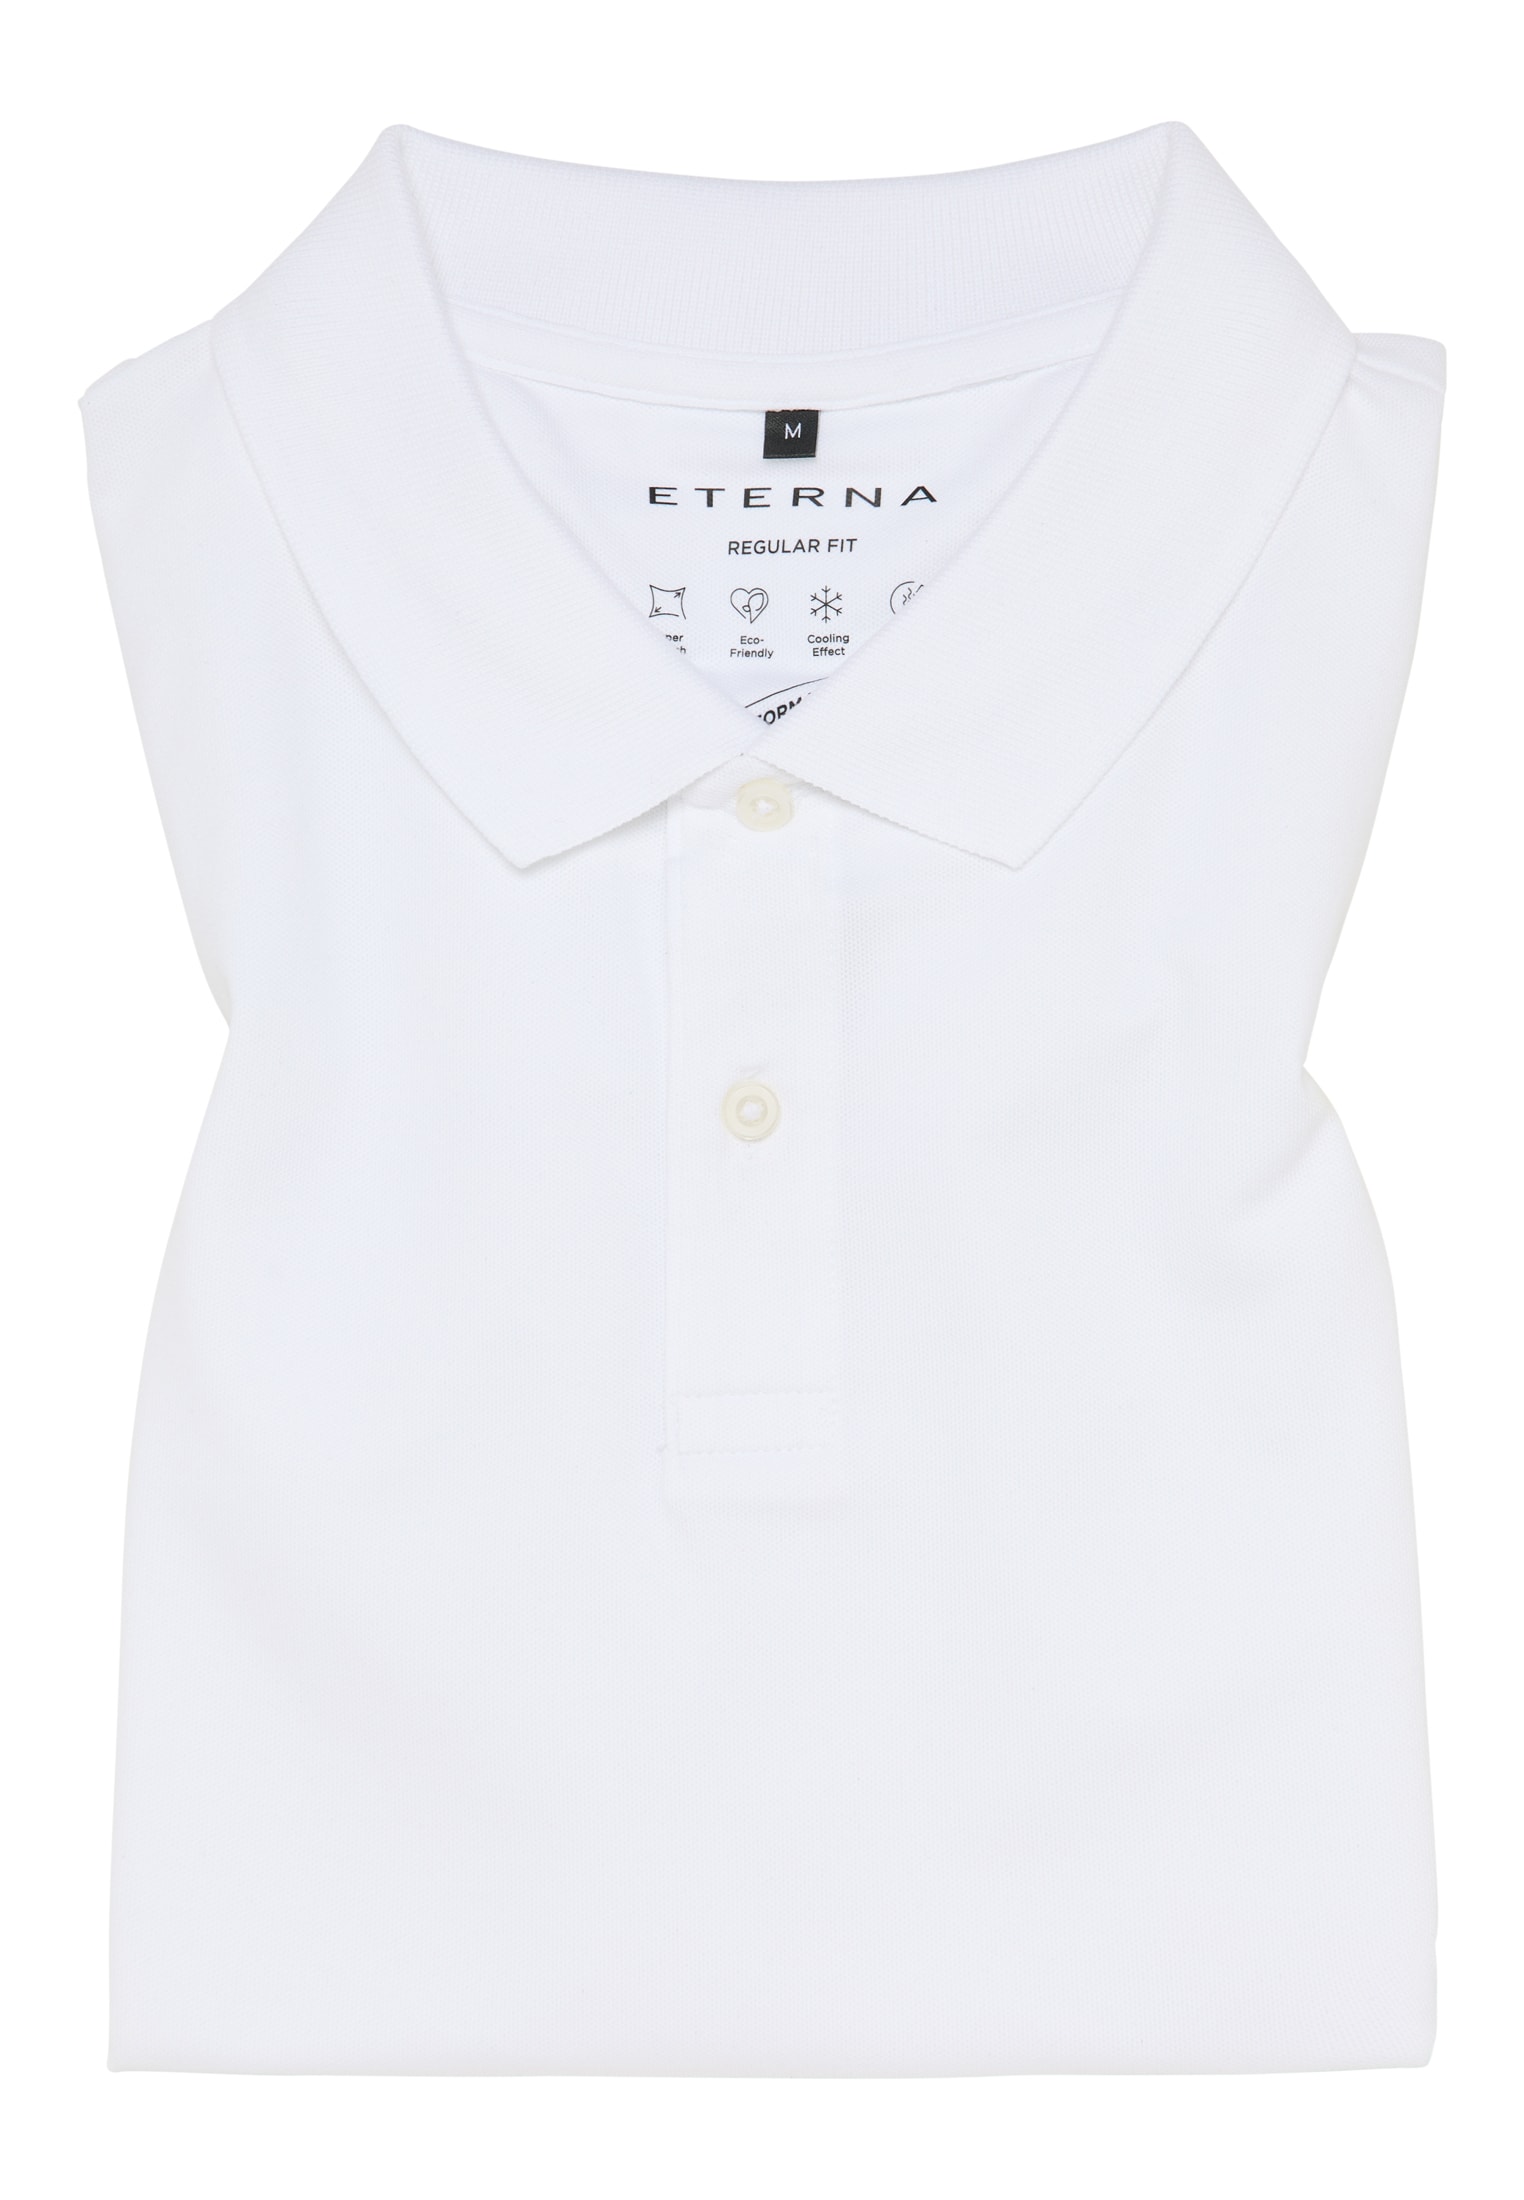 MODERN FIT Poloshirt in weiß unifarben | weiß | 42 | Kurzarm |  1SP00175-00-01-42-1/2